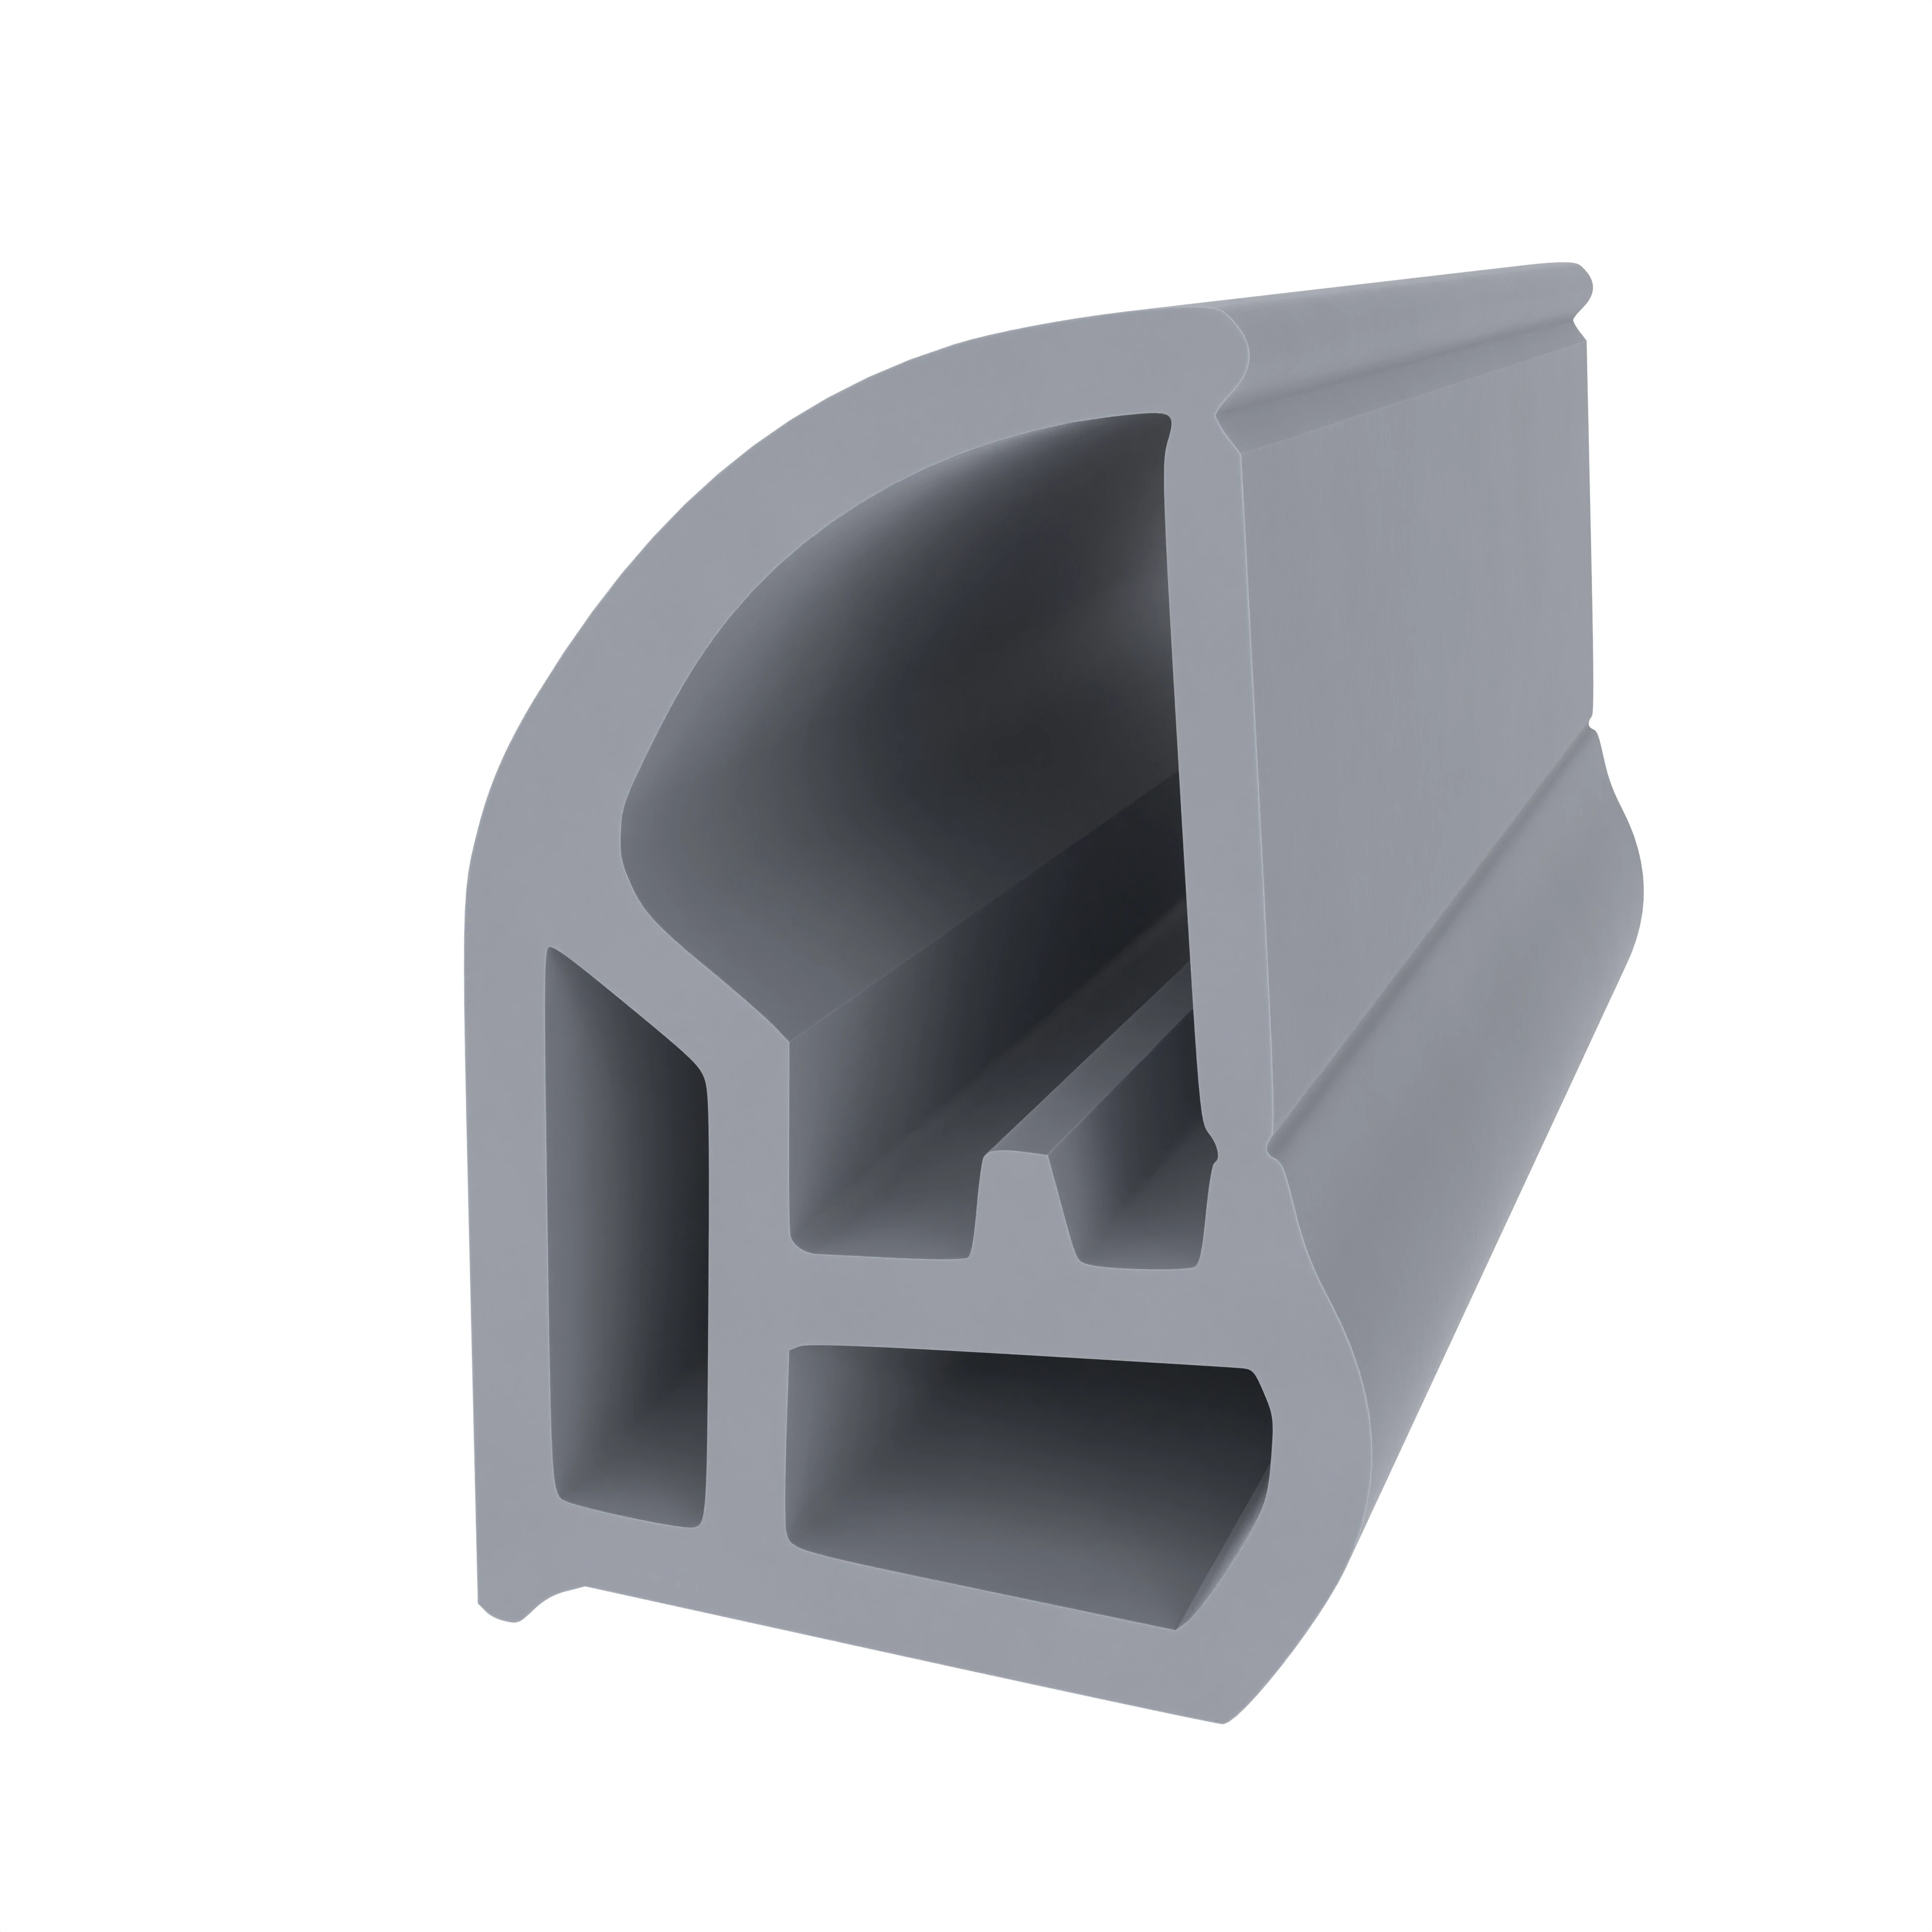 Stahlzargendichtung für hinterschrnittene Nut | 13 mm Breite | Farbe: grau